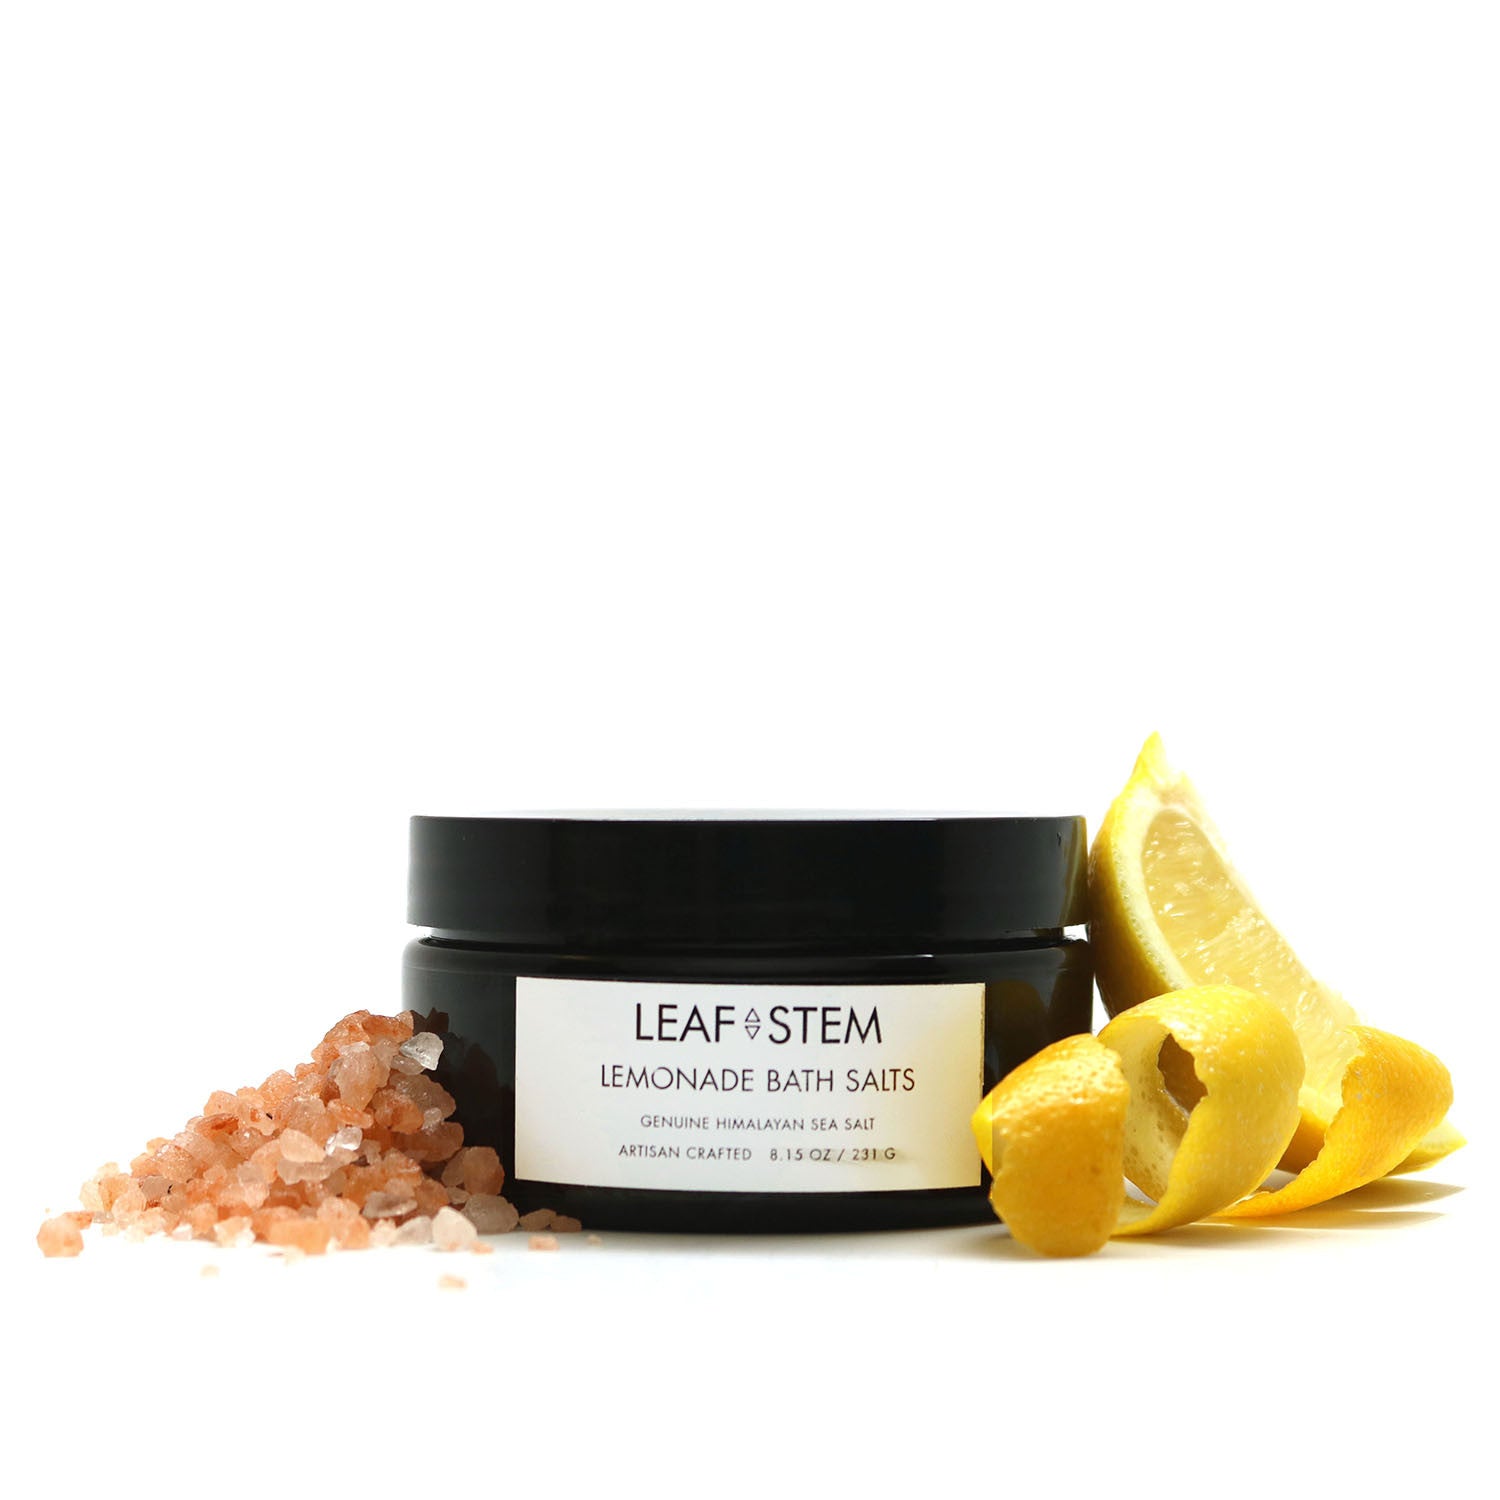 Lemonade Bath Salts - Leaf and Stem